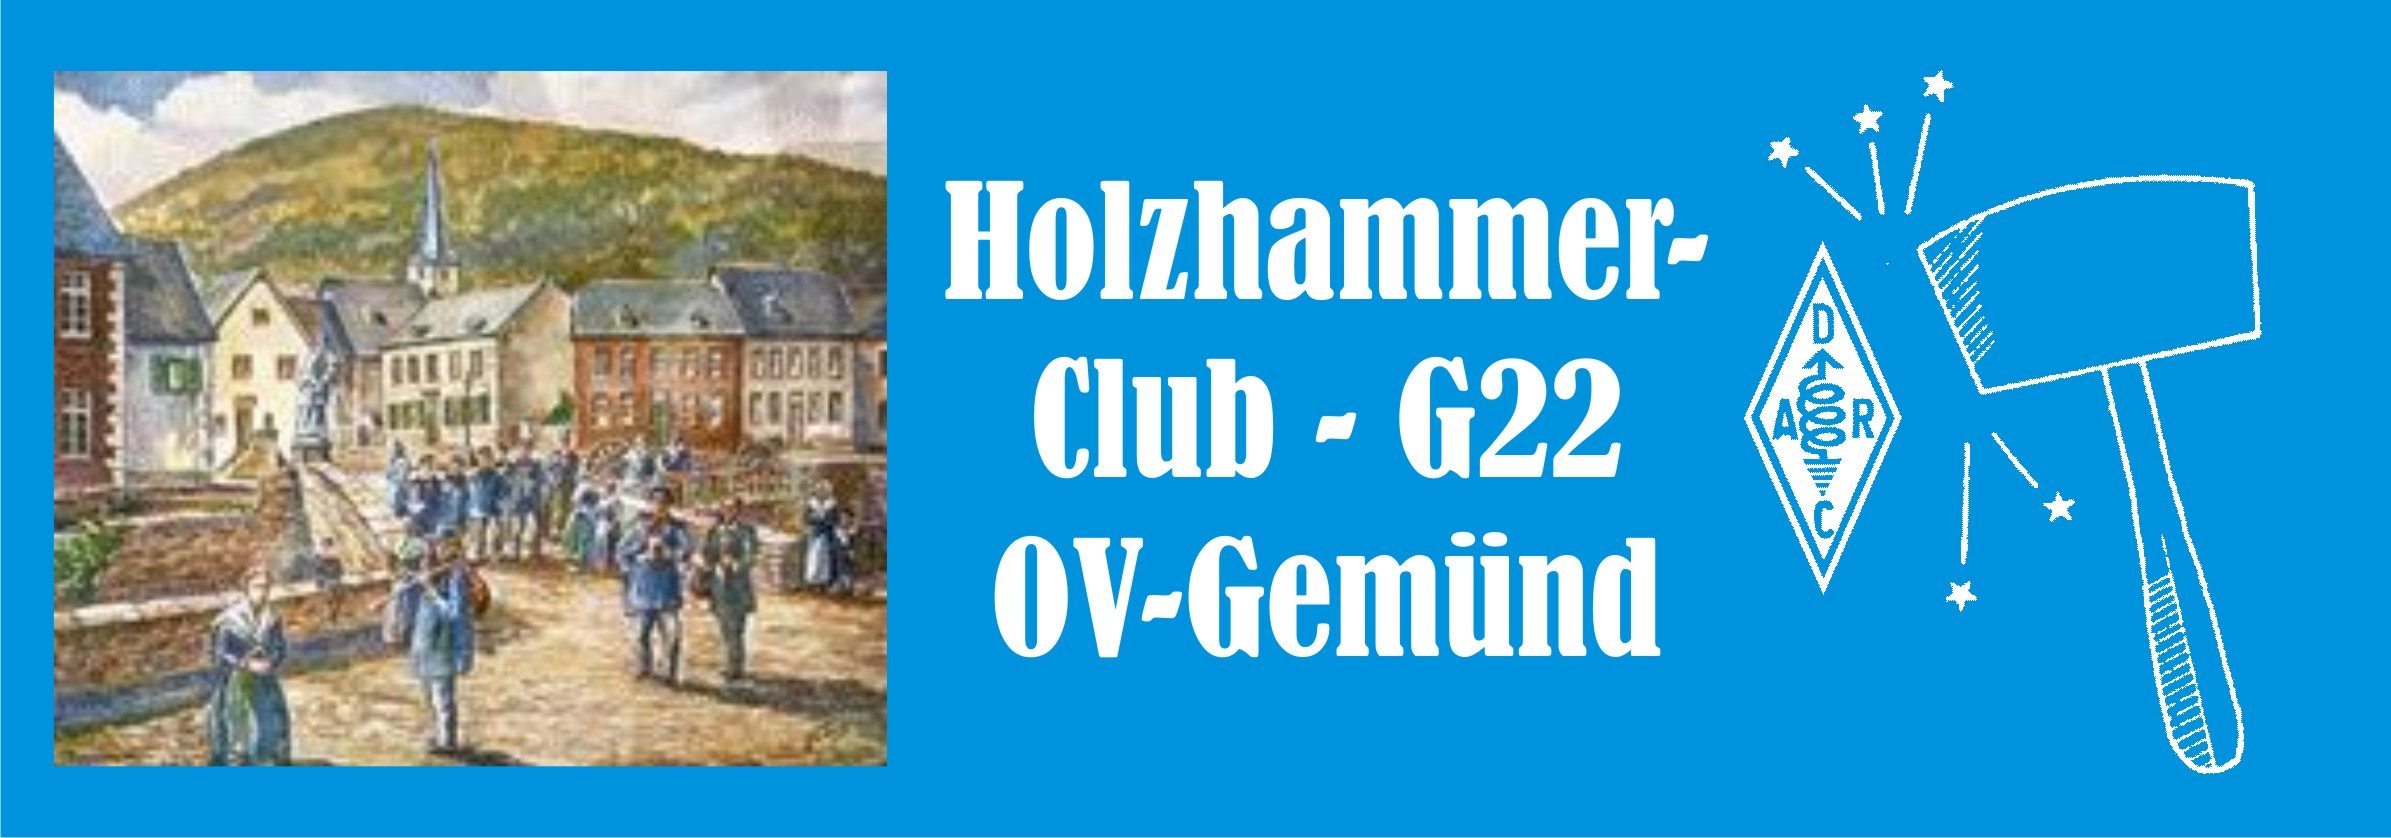 Holzhammer-Club